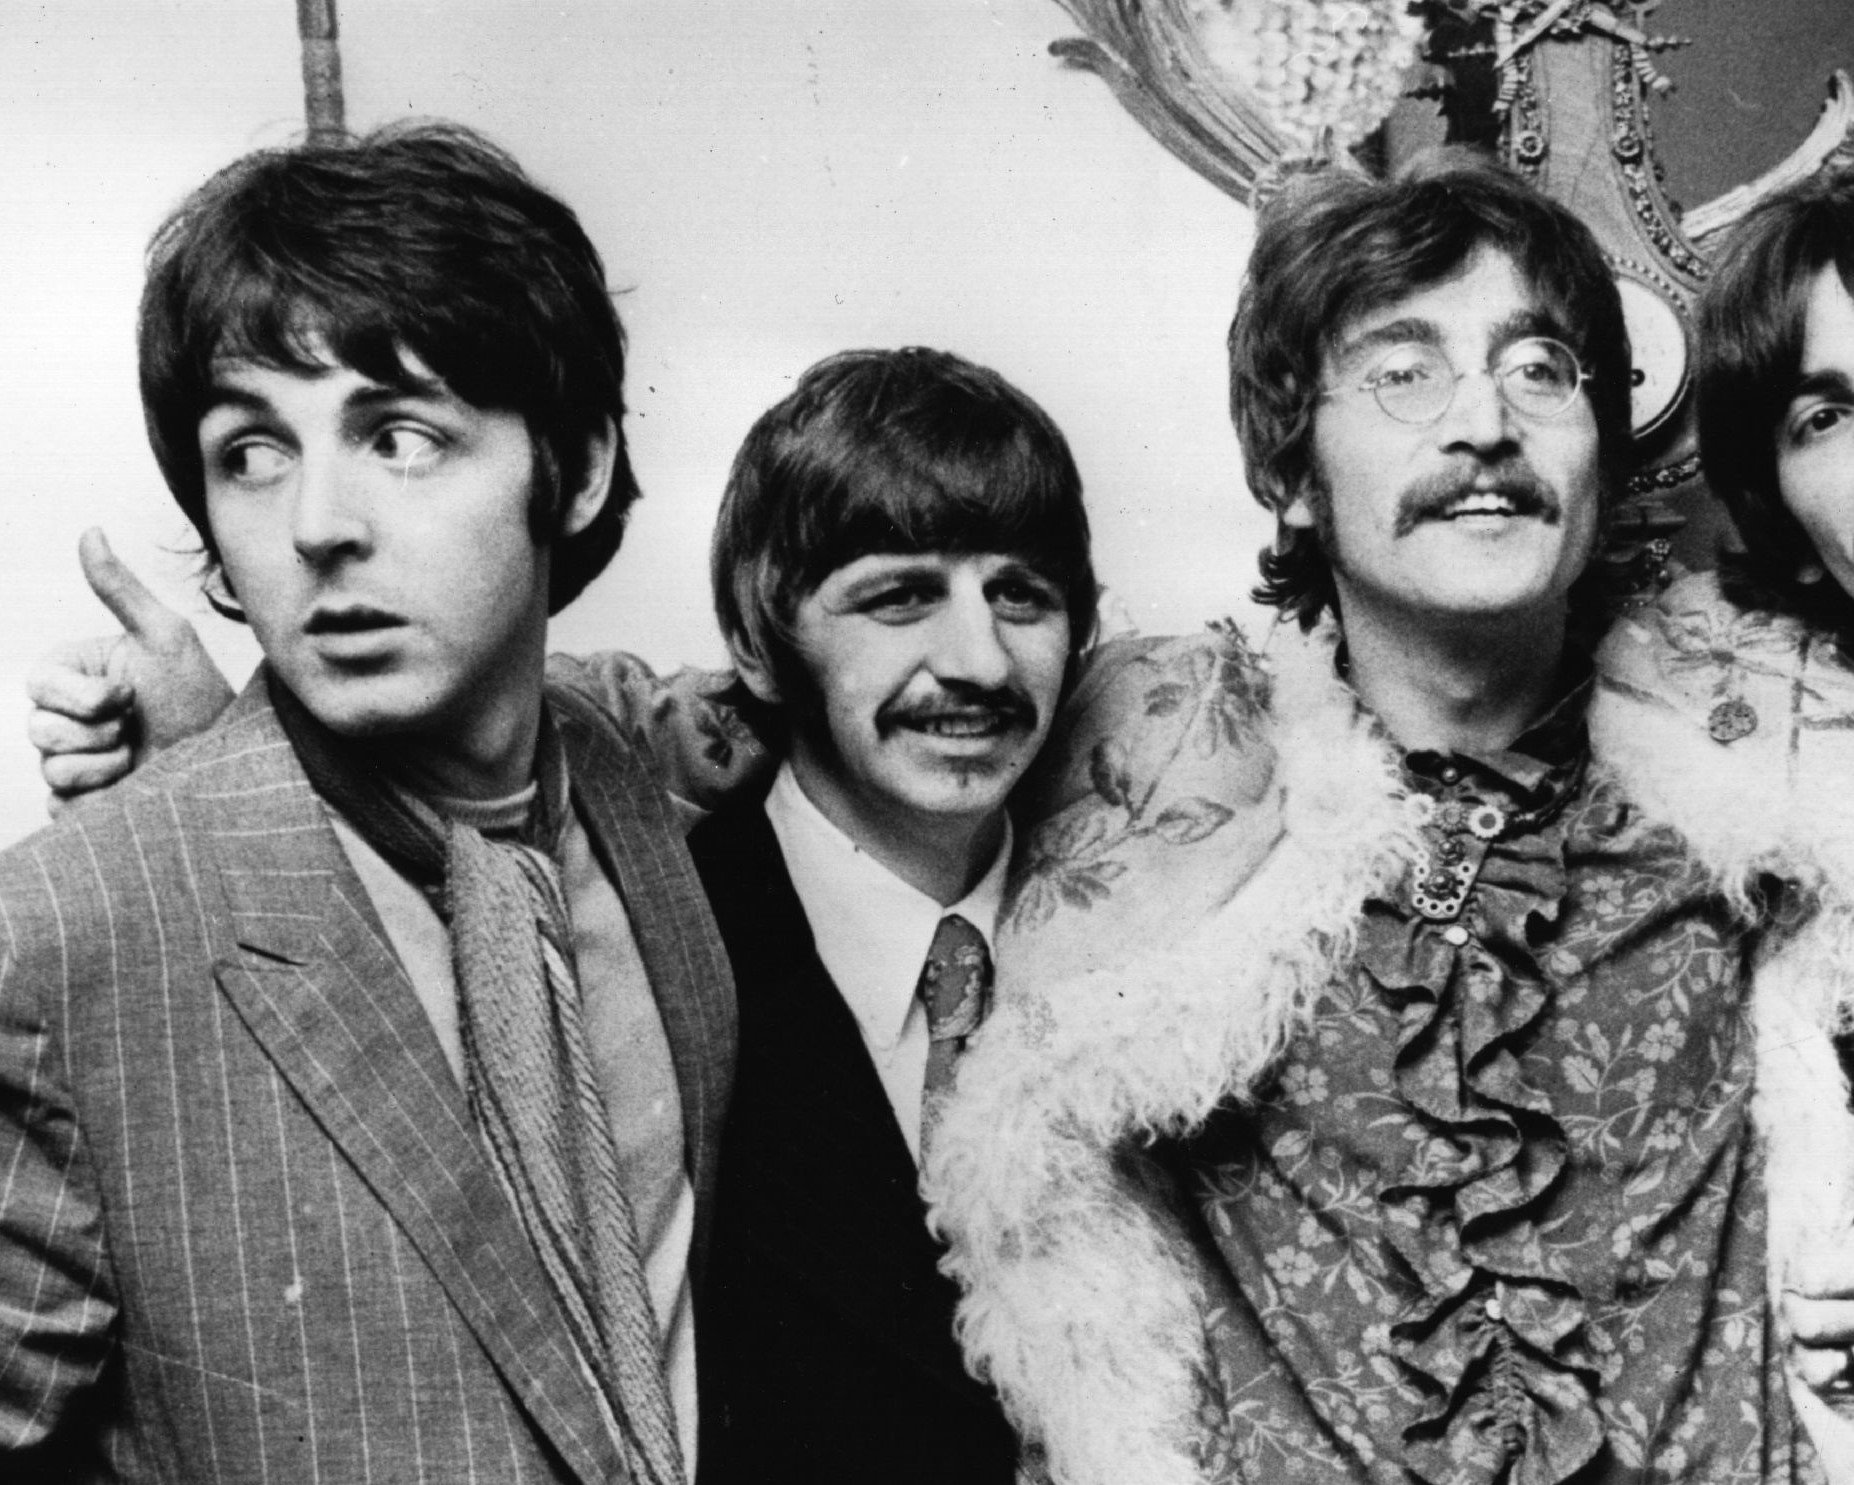 Paul McCartney, Ringo Starr, and John Lennon in black-and-white